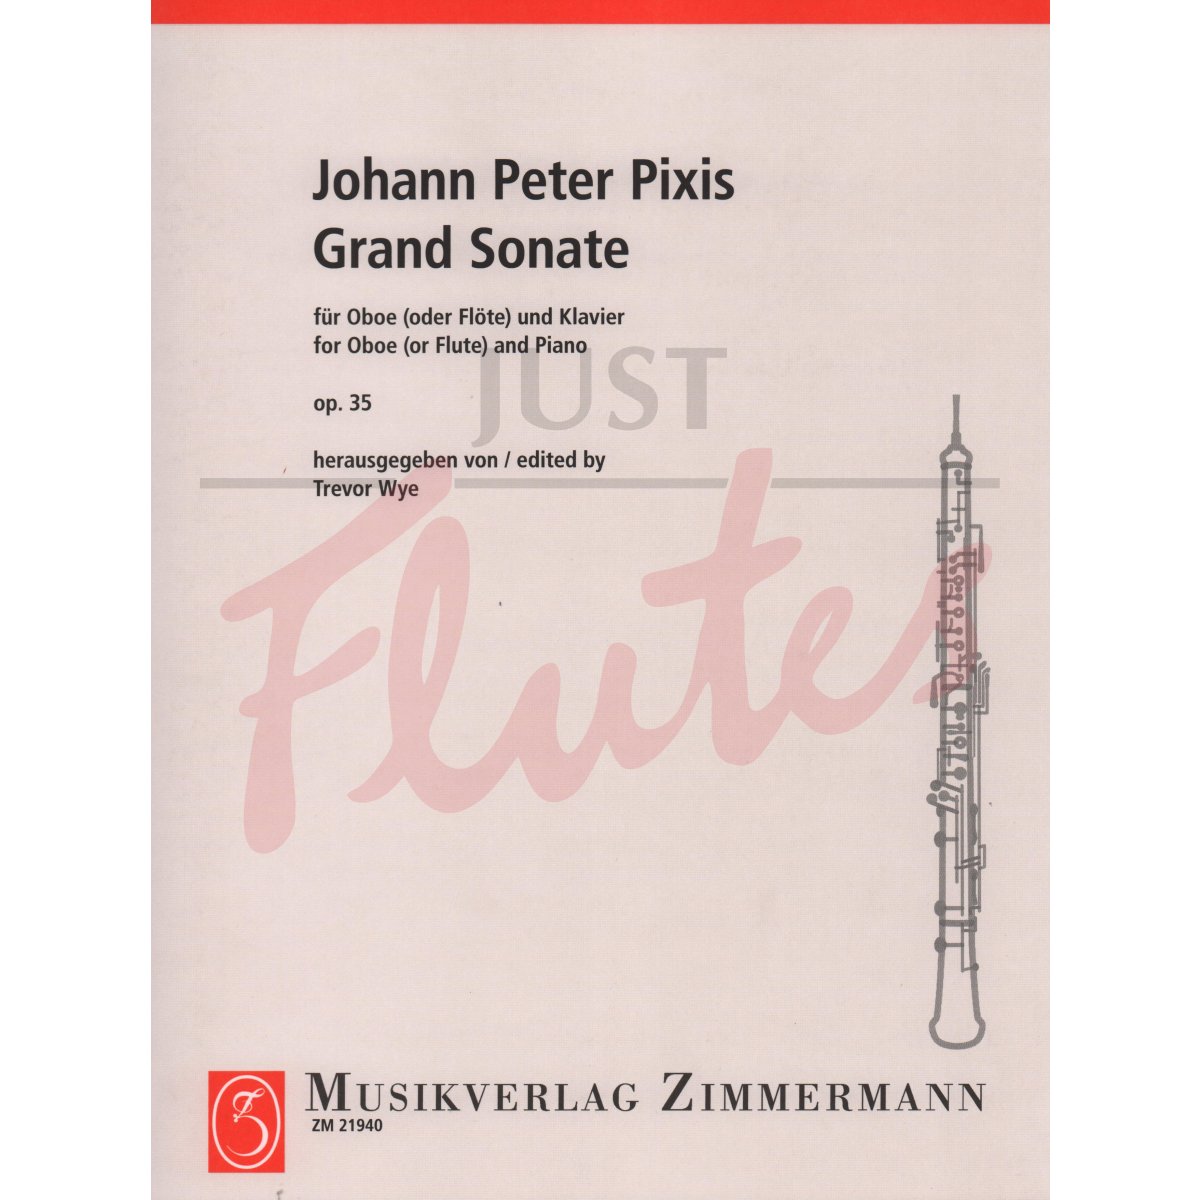 Grand Sonata for Oboe (or Flute) and Piano